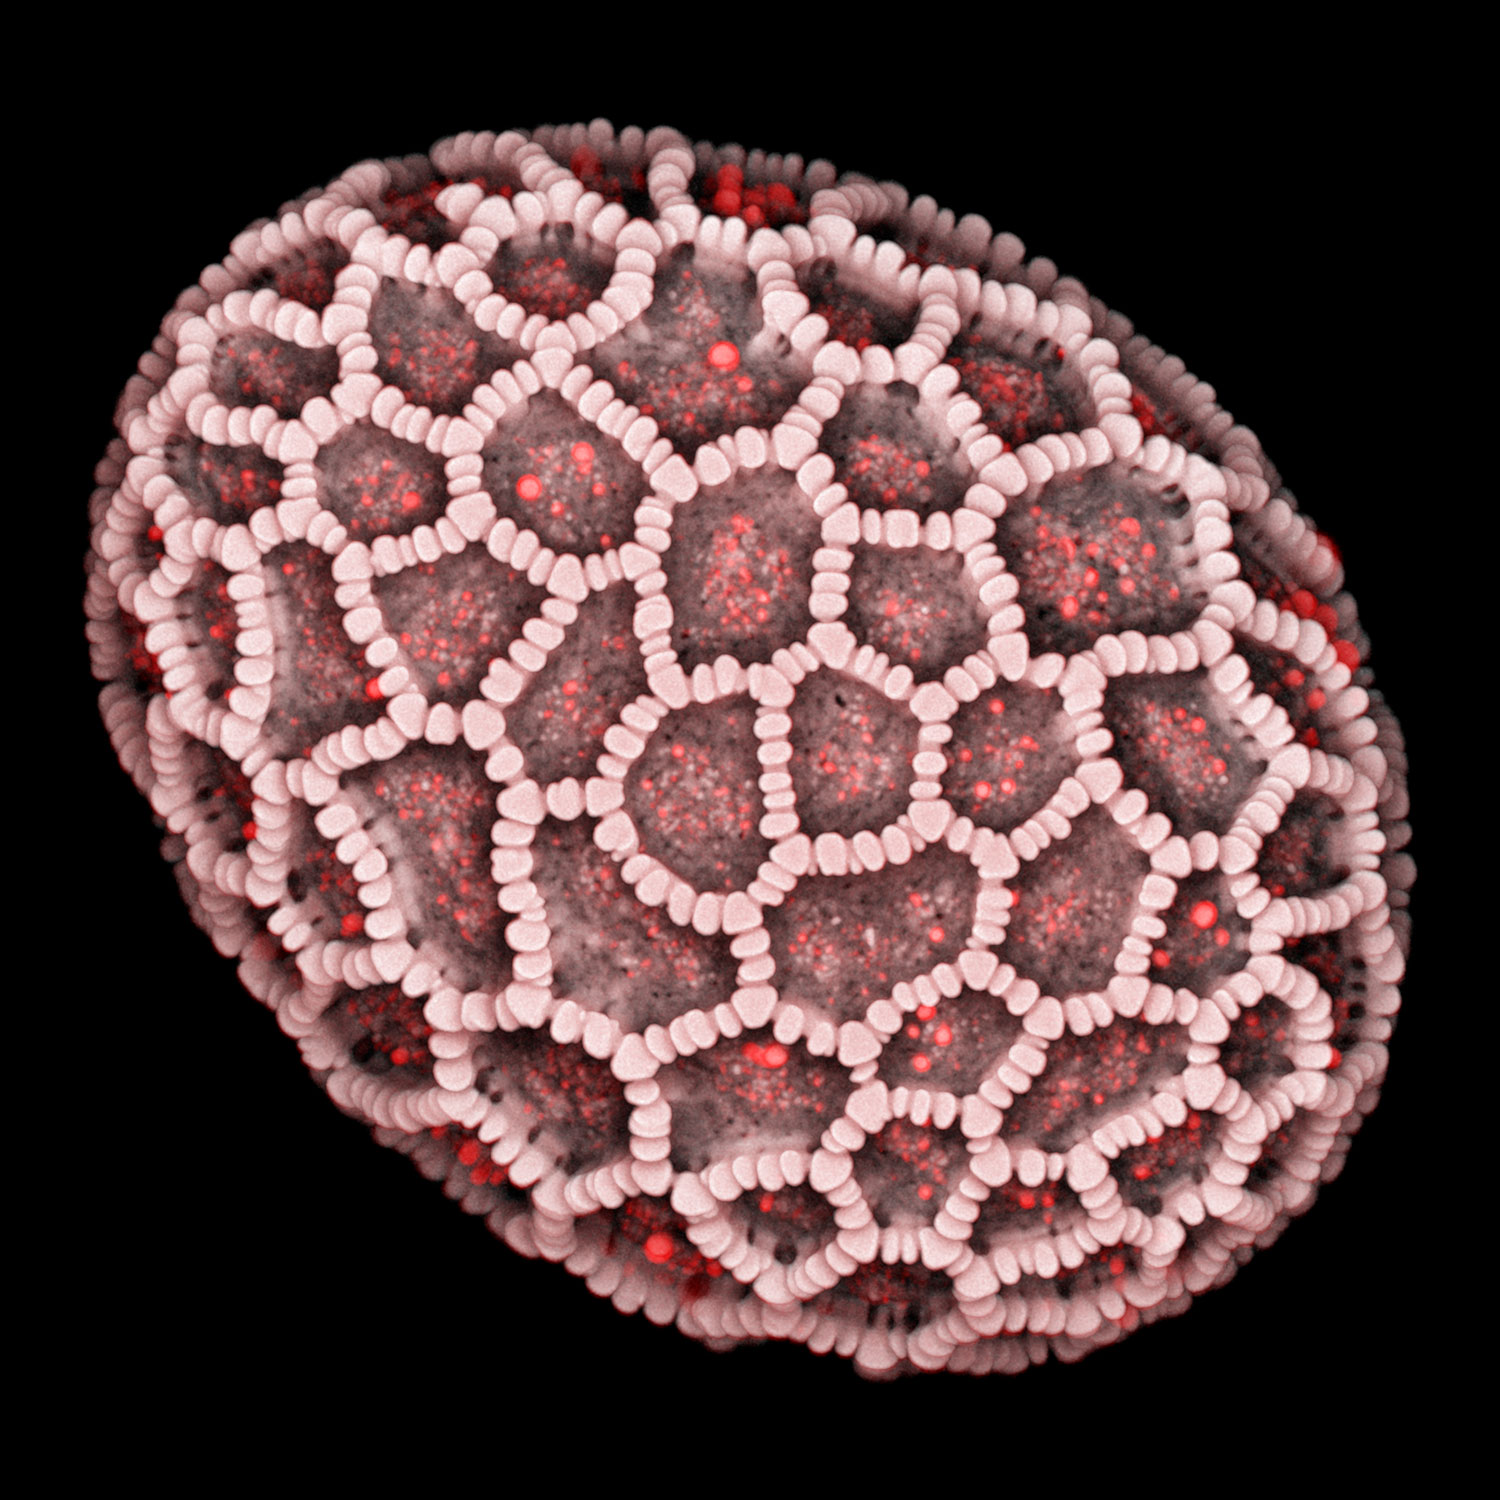 La micrographie montre un grain de pollen de lilium auratum, image capturée avec Airyscan 2 en mode Multiplex.